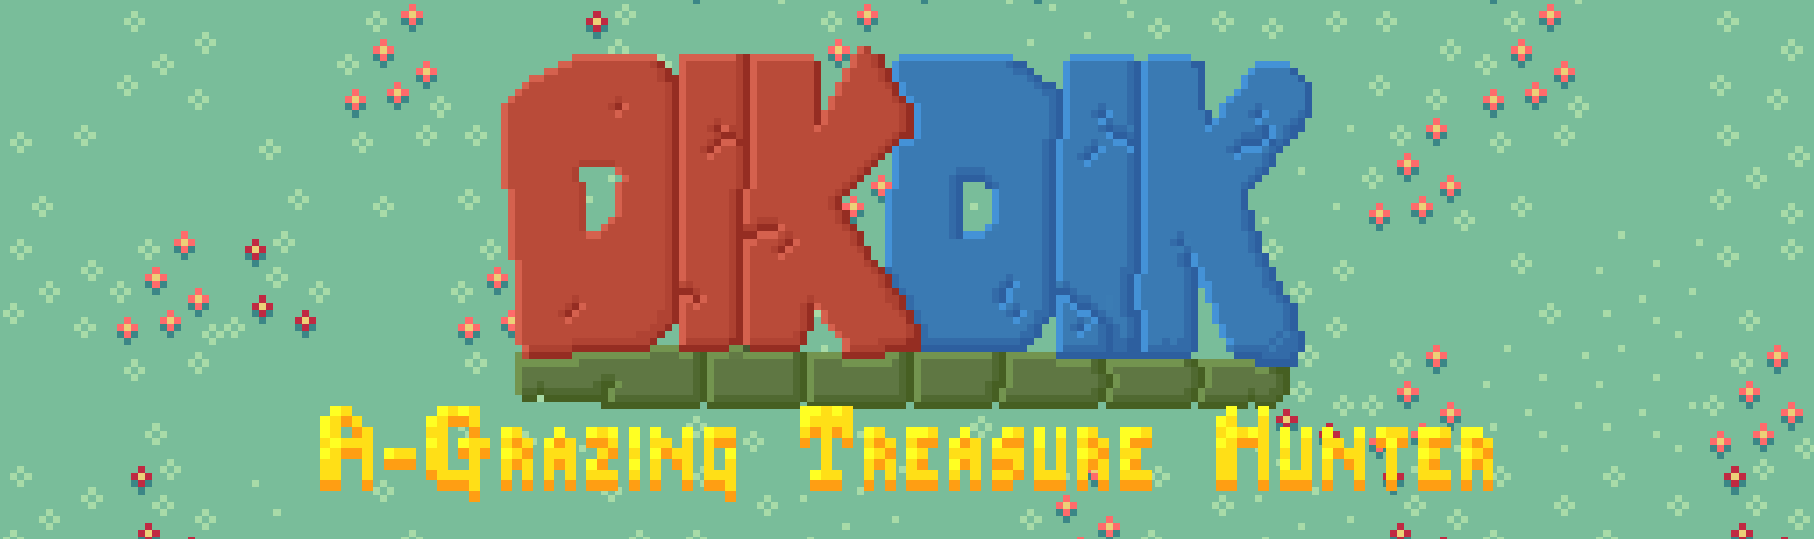 Dikdik: A-Grazing Treasure Hunter